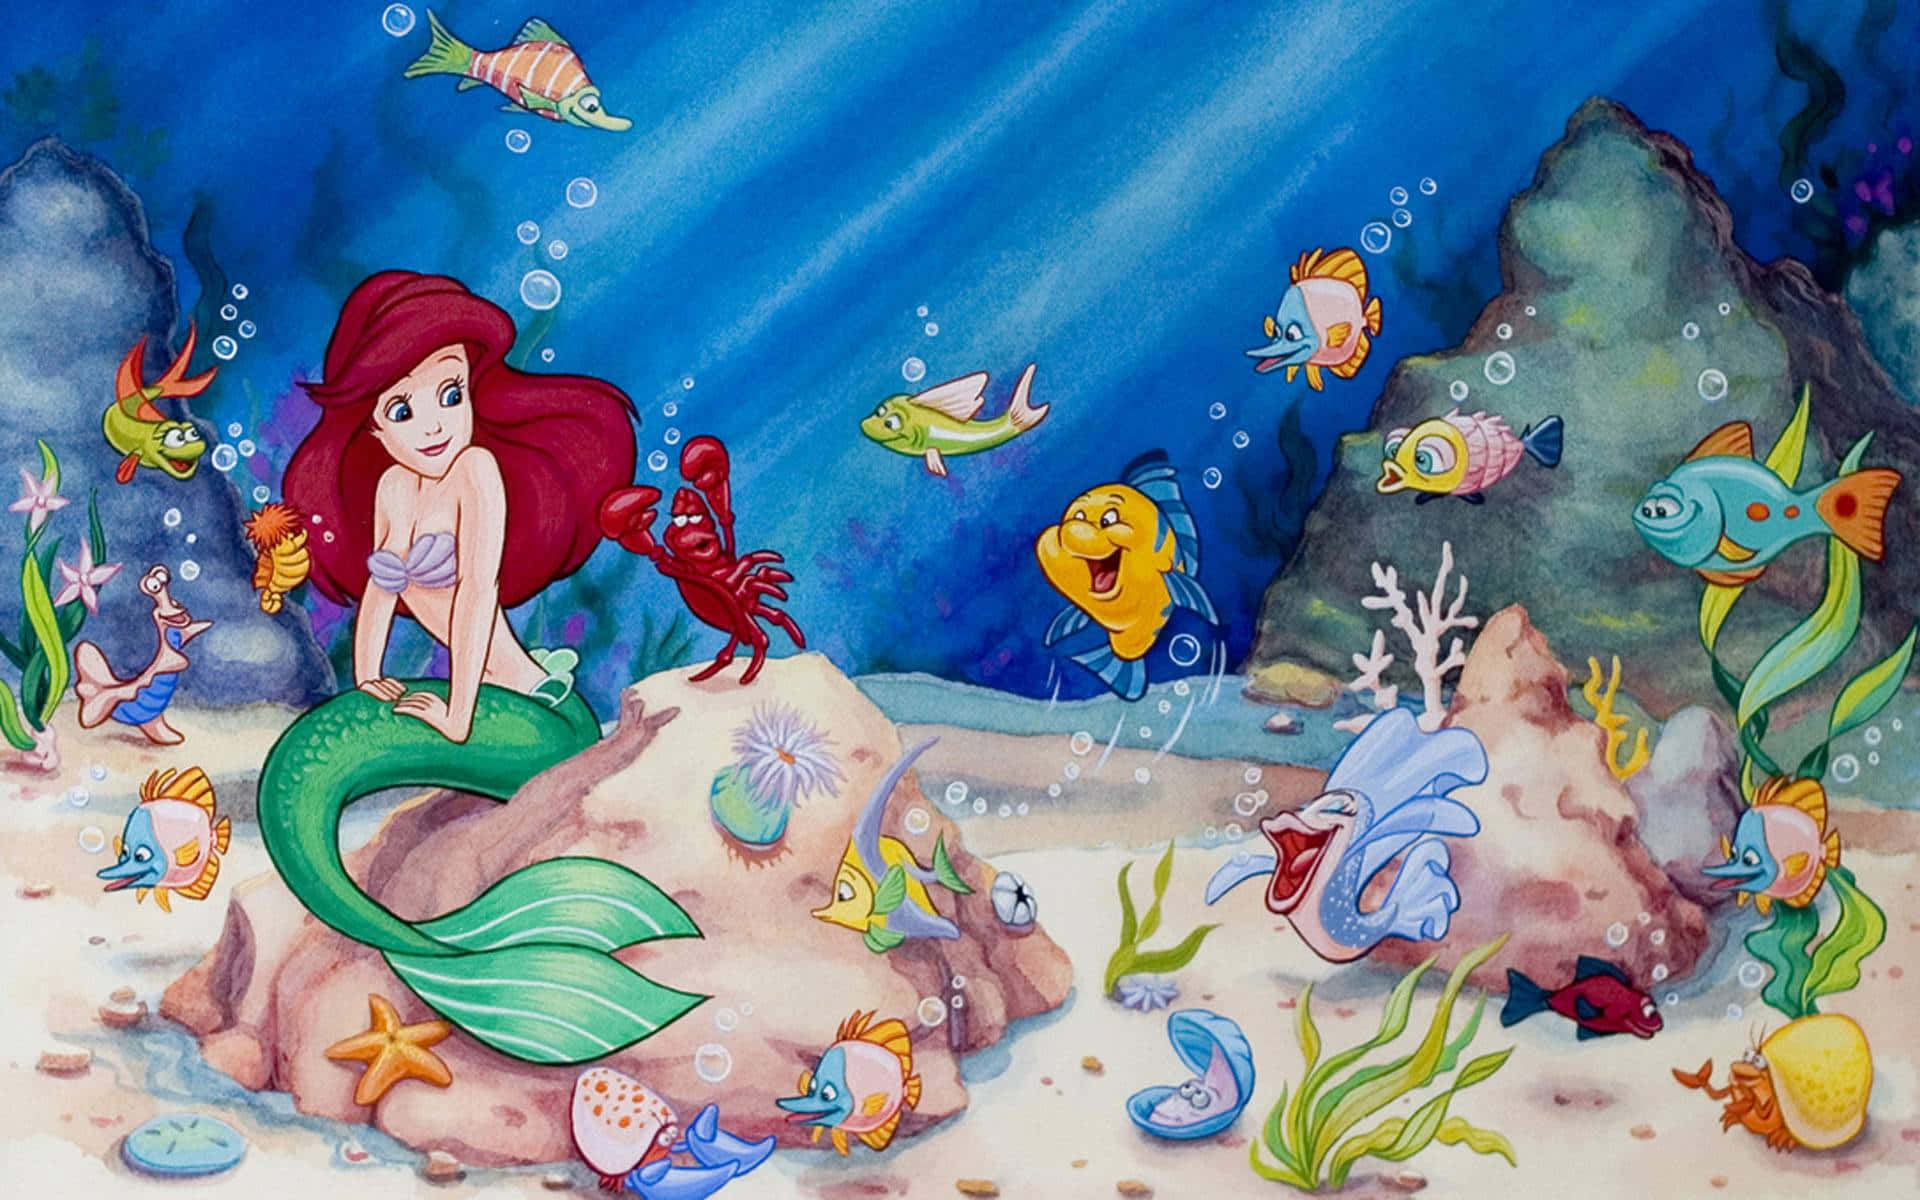 Einwunderschöner Traum Von Unentdeckten Abenteuern Mit Der Zauberhaften Kleinen Meerjungfrau. Wallpaper